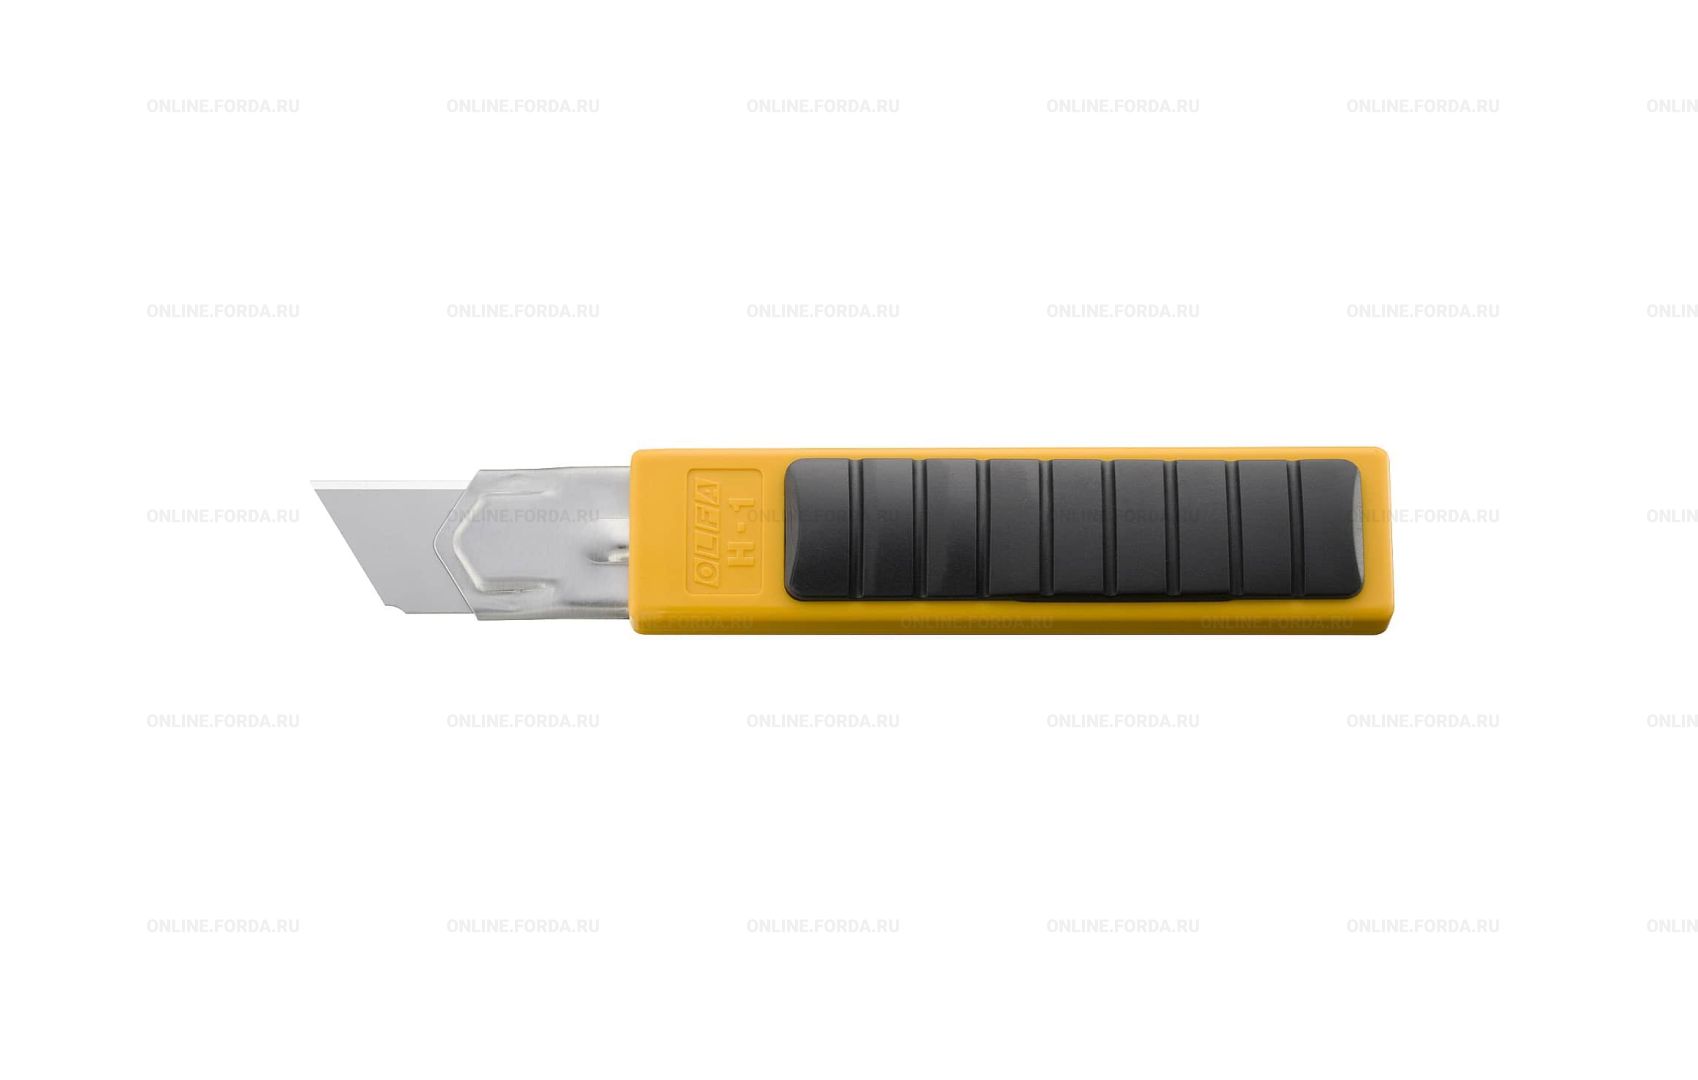 Нож OLFA с выдвижным лезвием и желтым корпусом, вид сзади